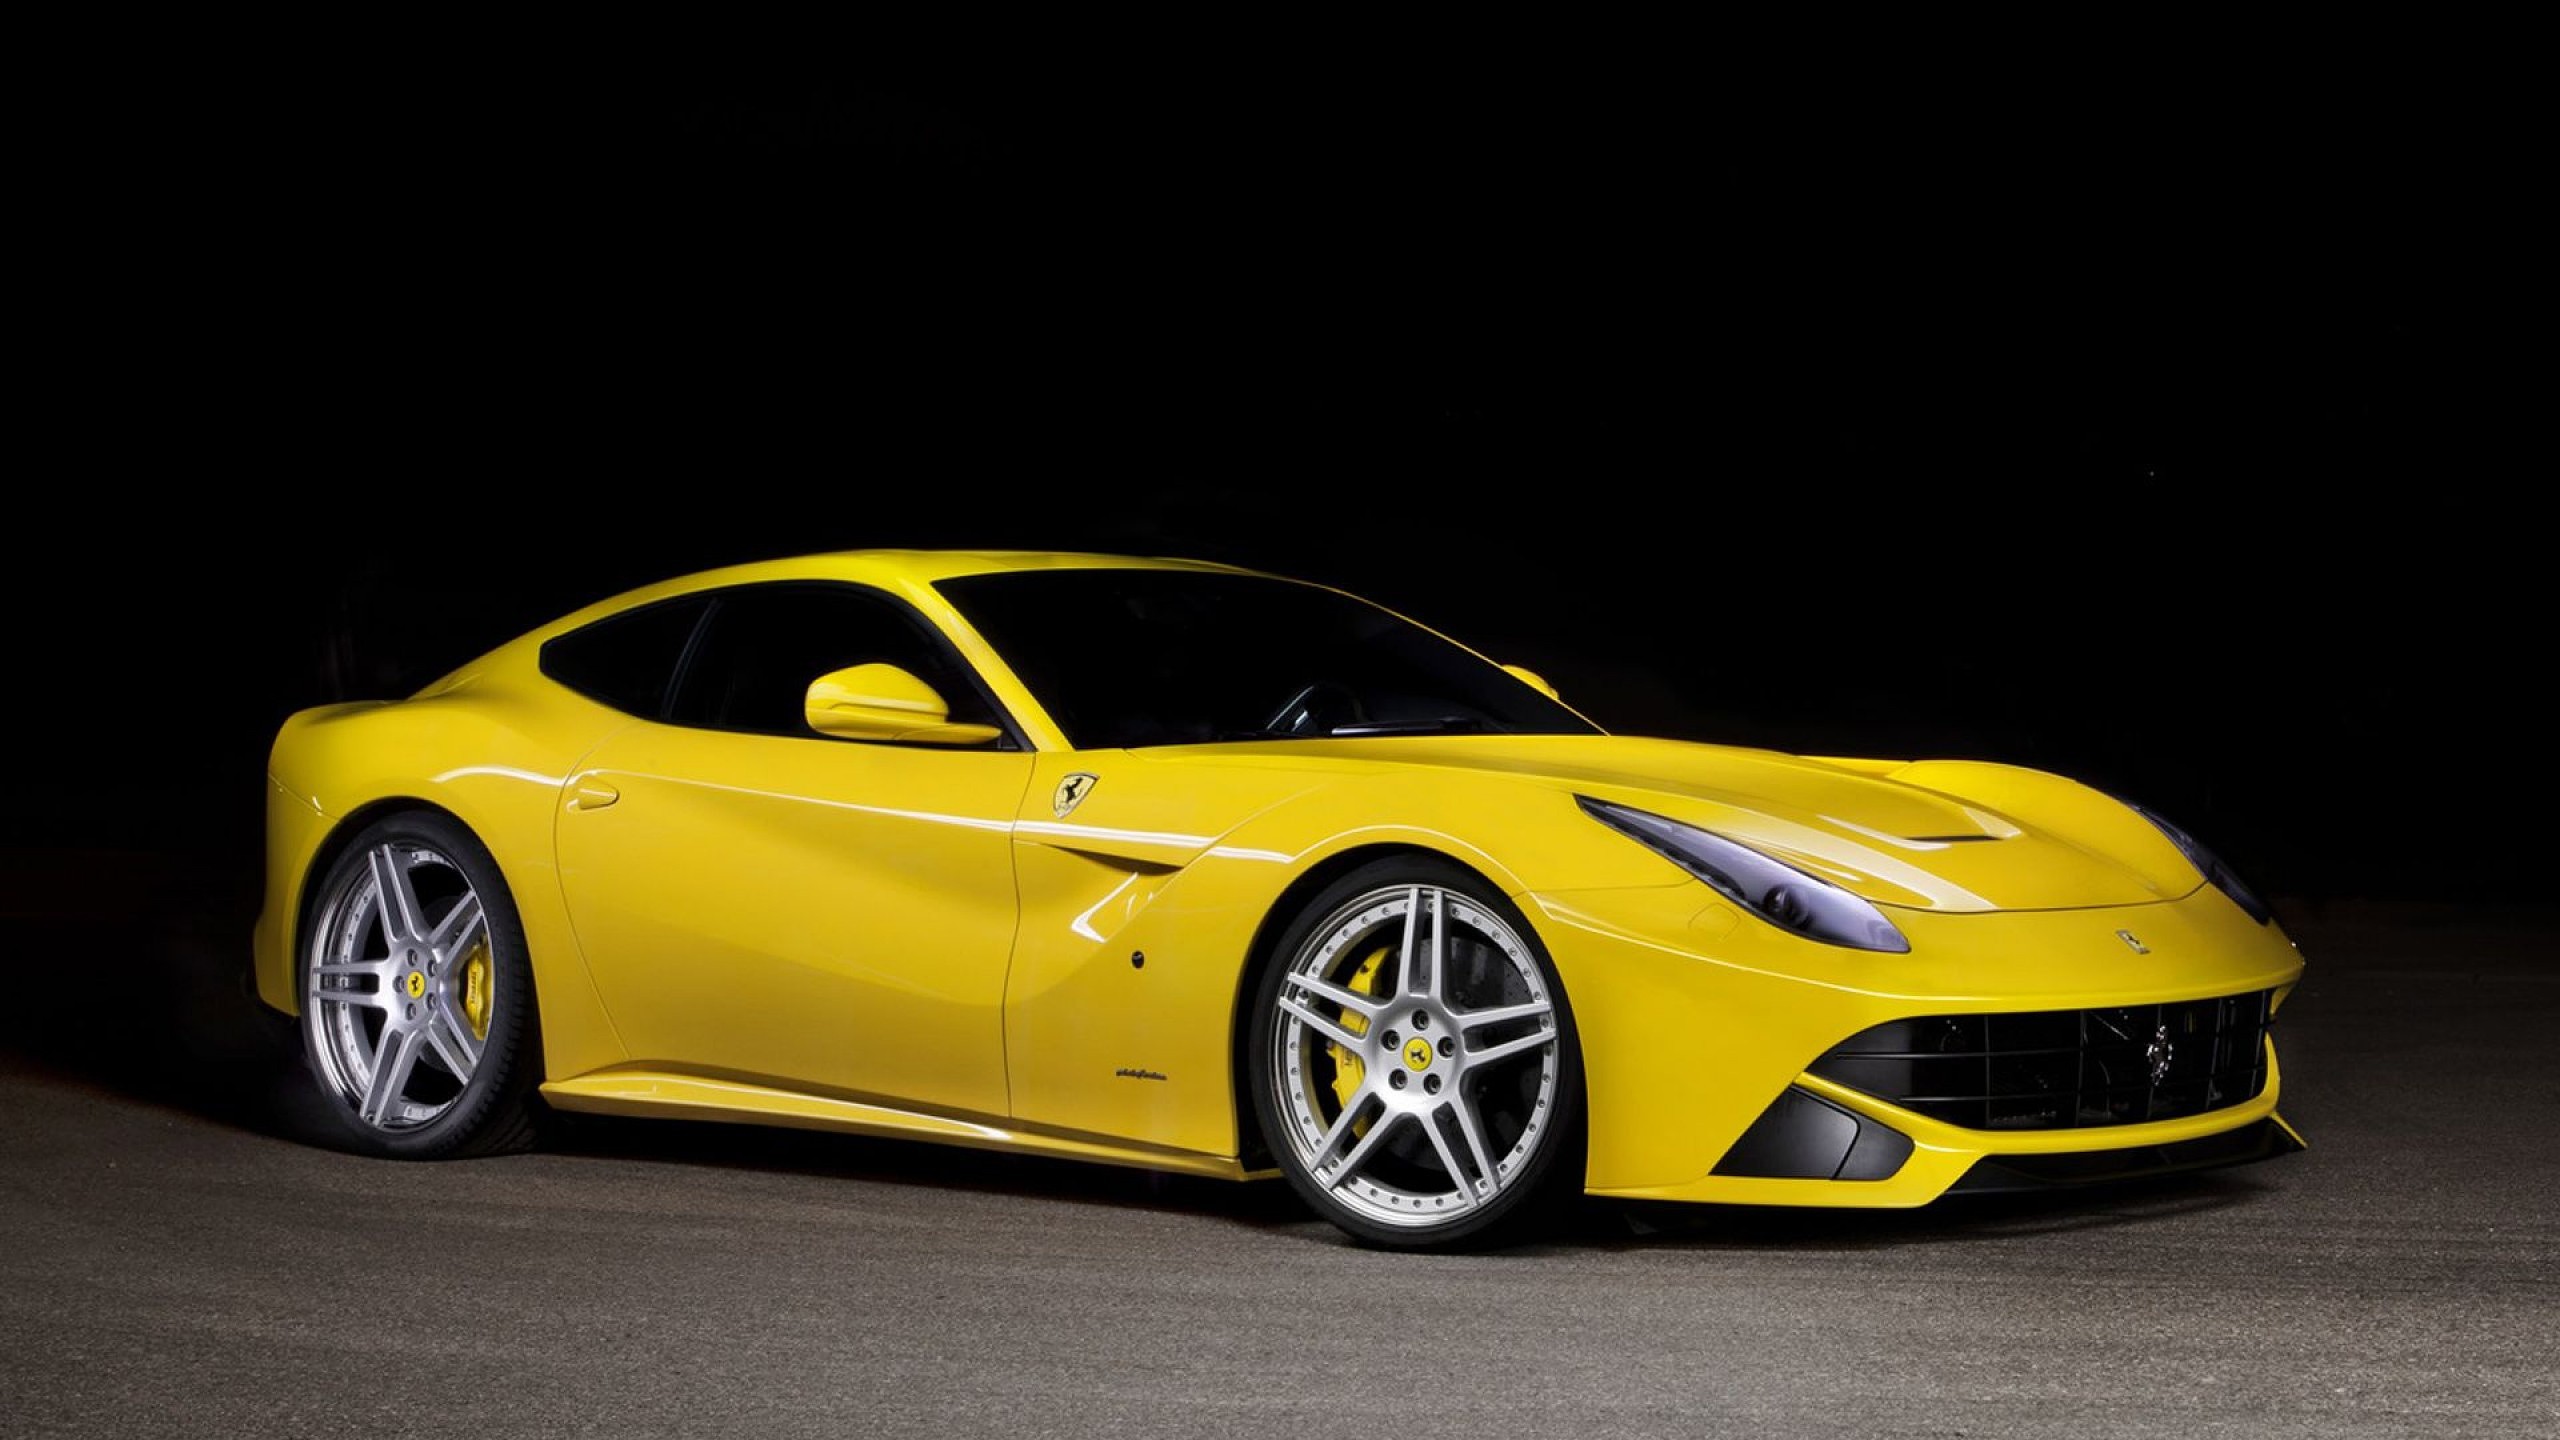 2560x1440 Car Ferrari F12 Berlinetta Yellow